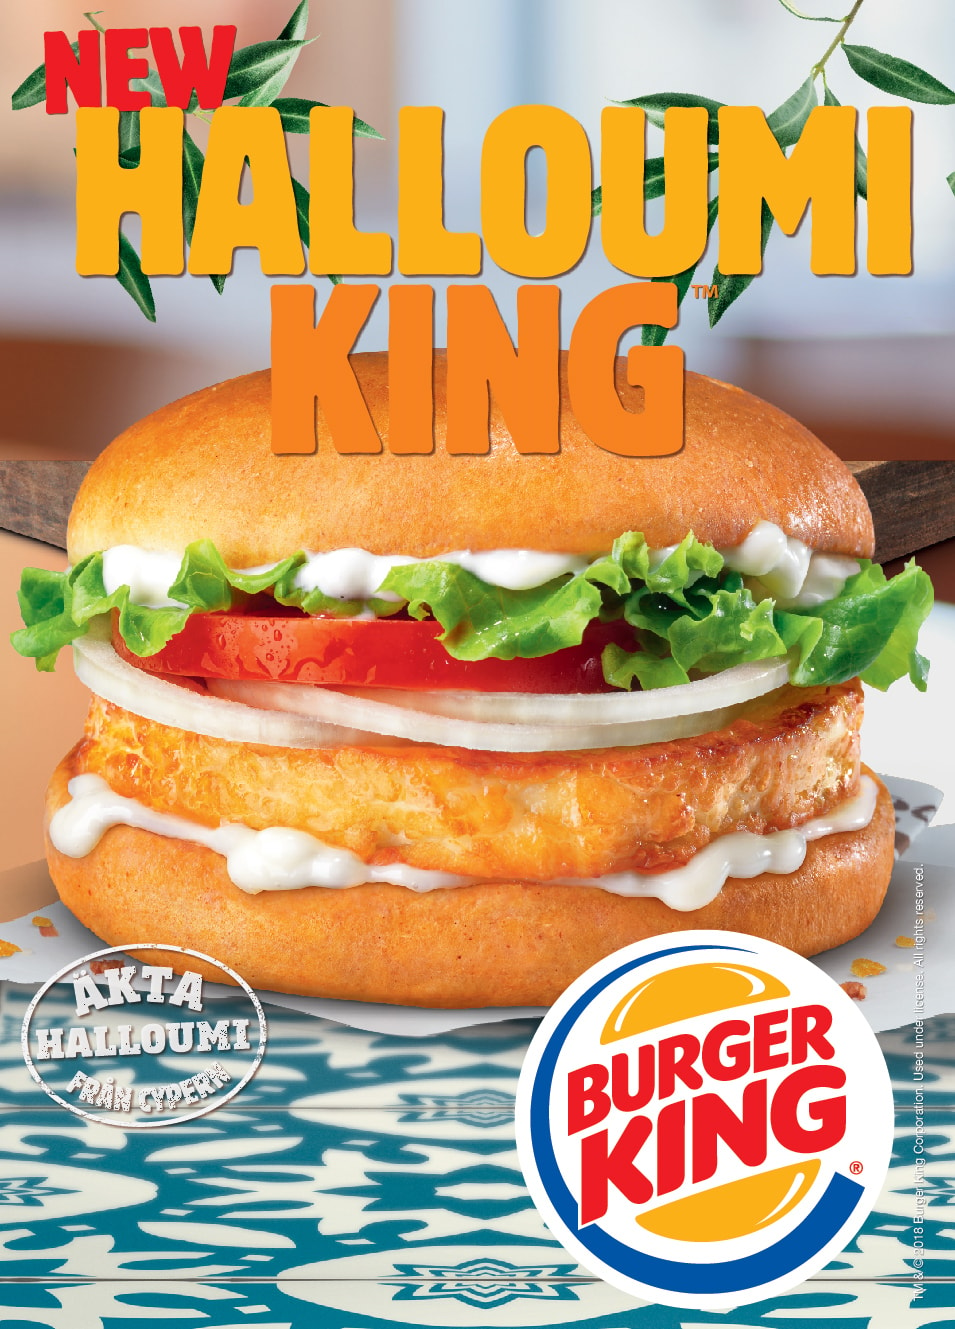 Burger King Meal inkl. Plusmeny, köp 2 betala för 1 (1 av 5)